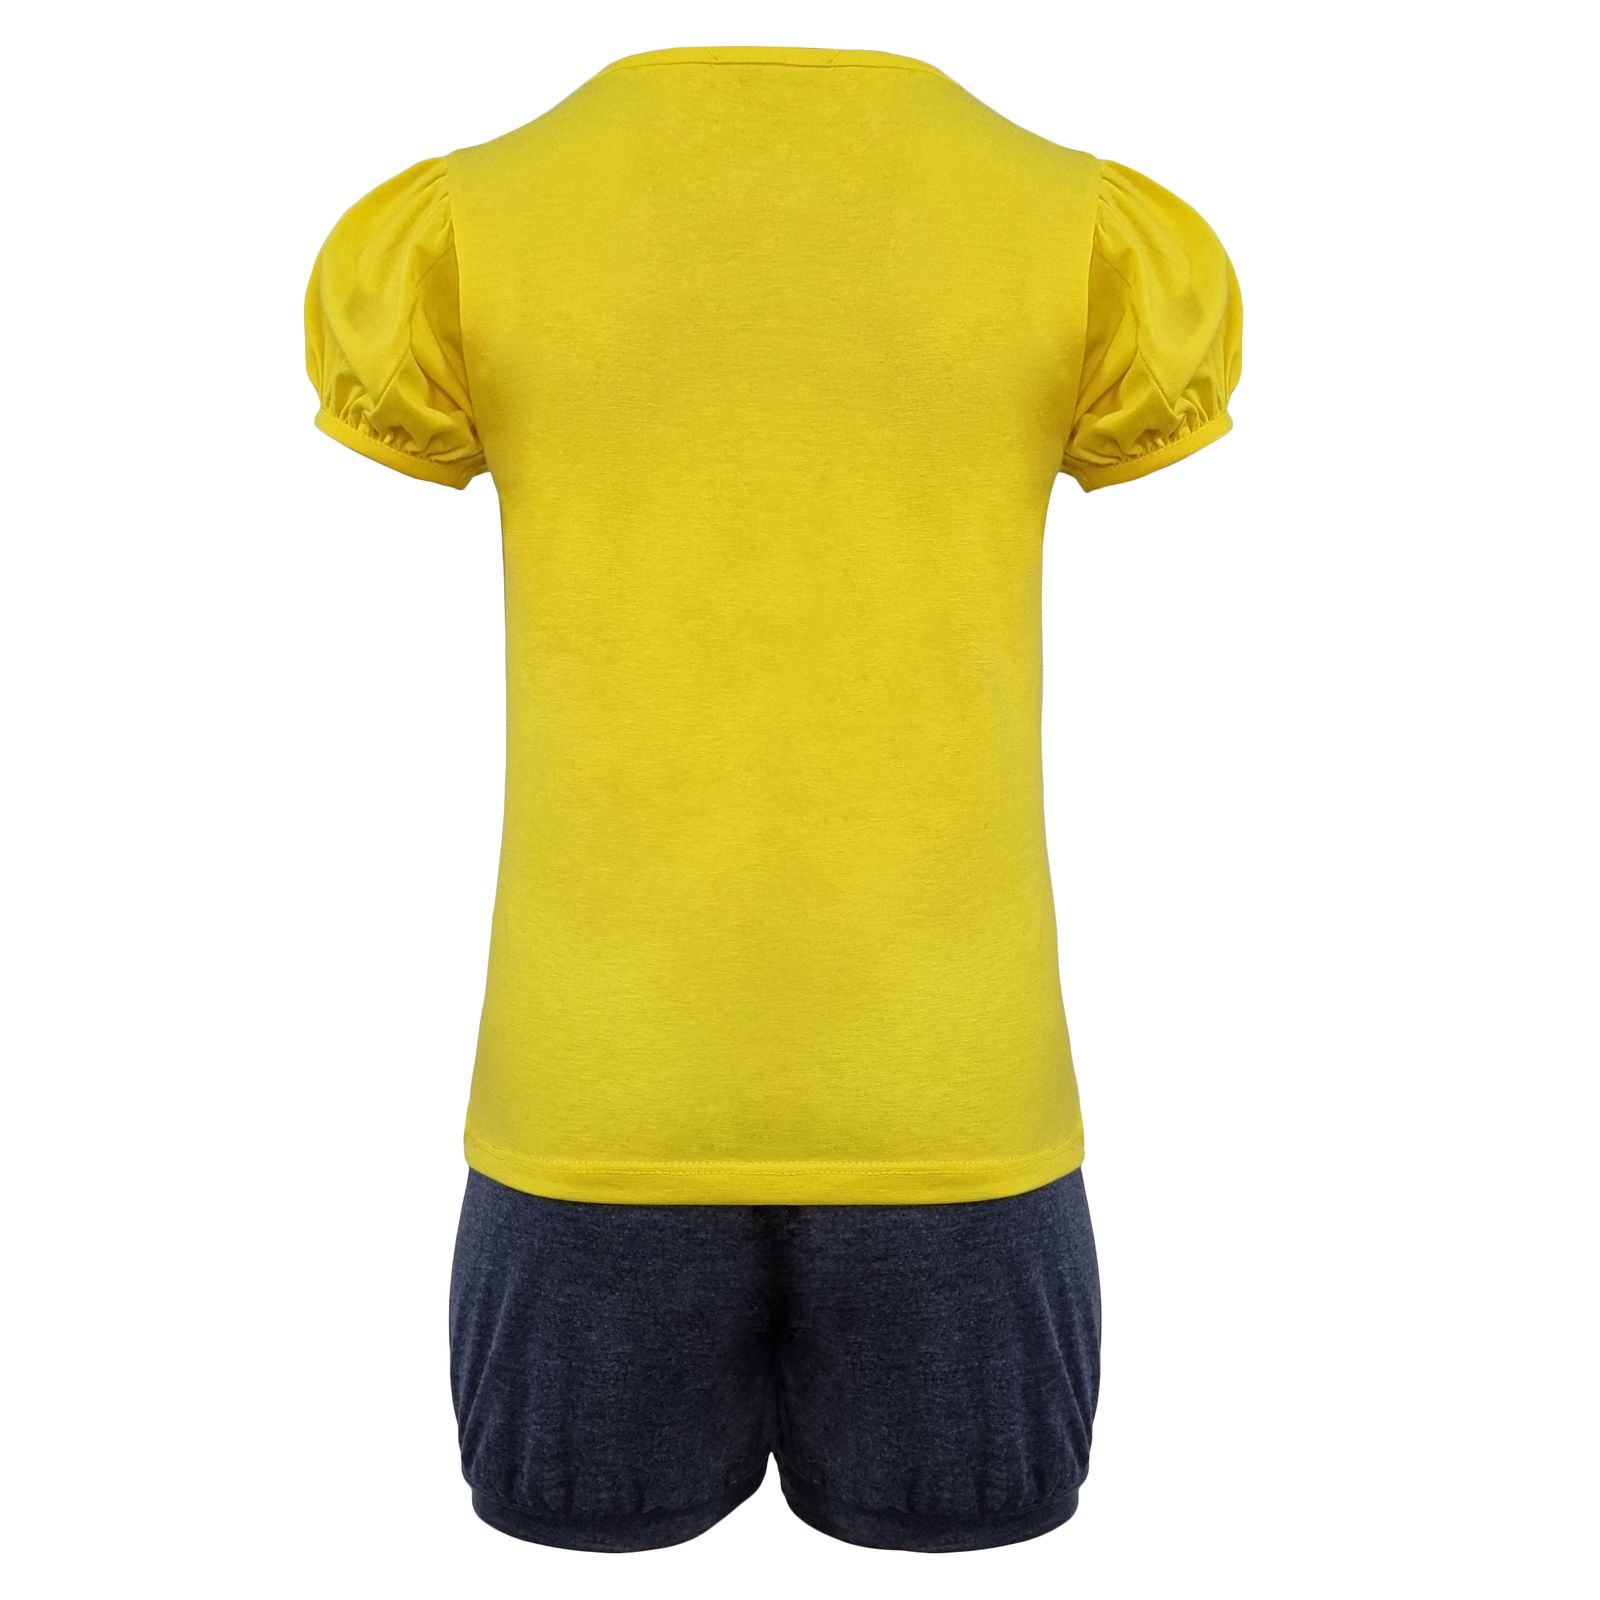 ست تی شرت و شلوارک دخترانه افراتین مدل دختر ساحلی رنگ زرد -  - 4